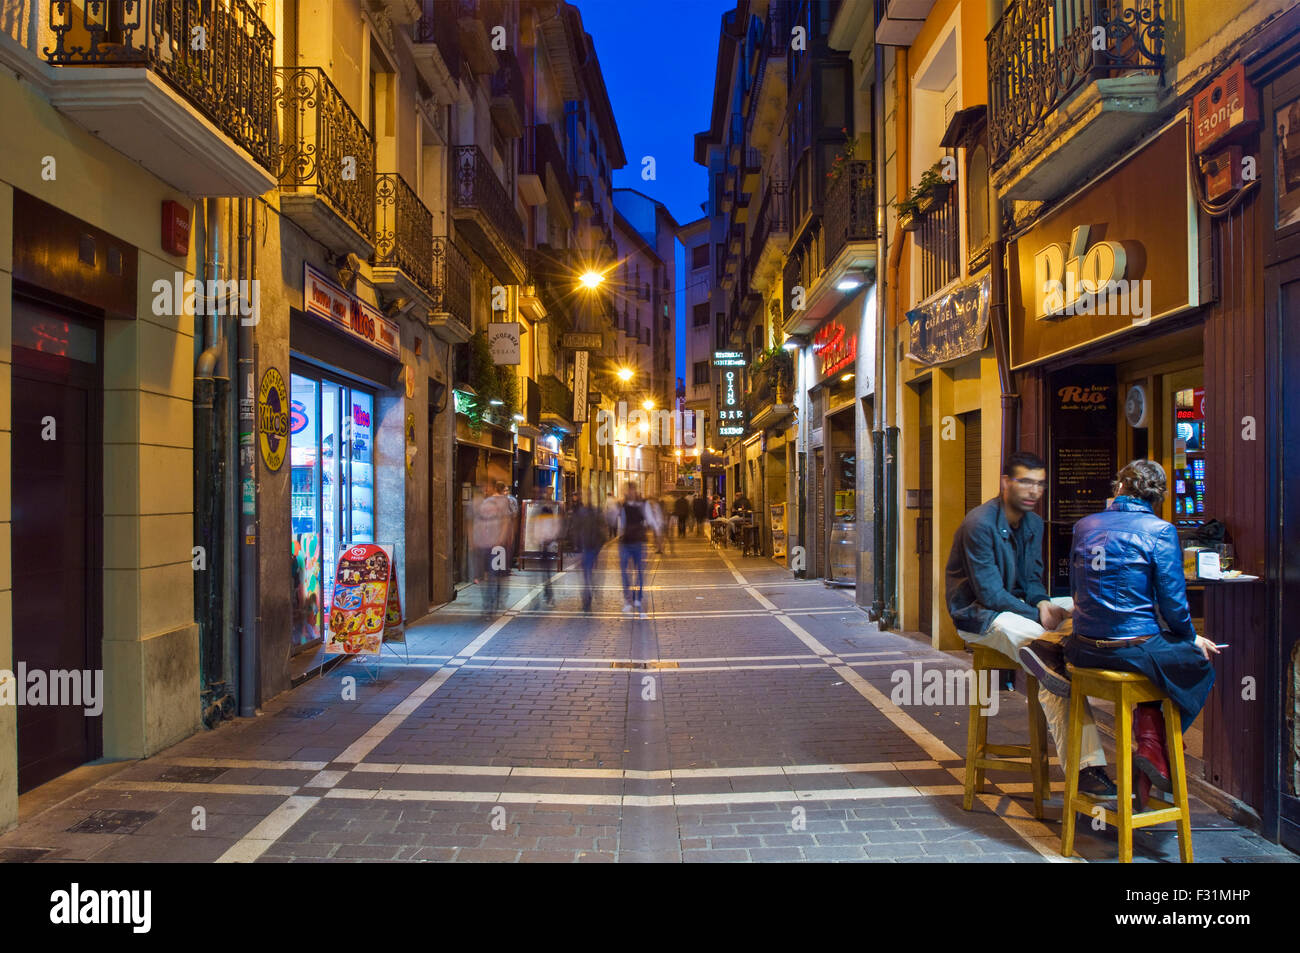 Sera vista strada del centro di Pamplona, Spagna. Immagine presa sulla Calle San Nicolas Foto Stock